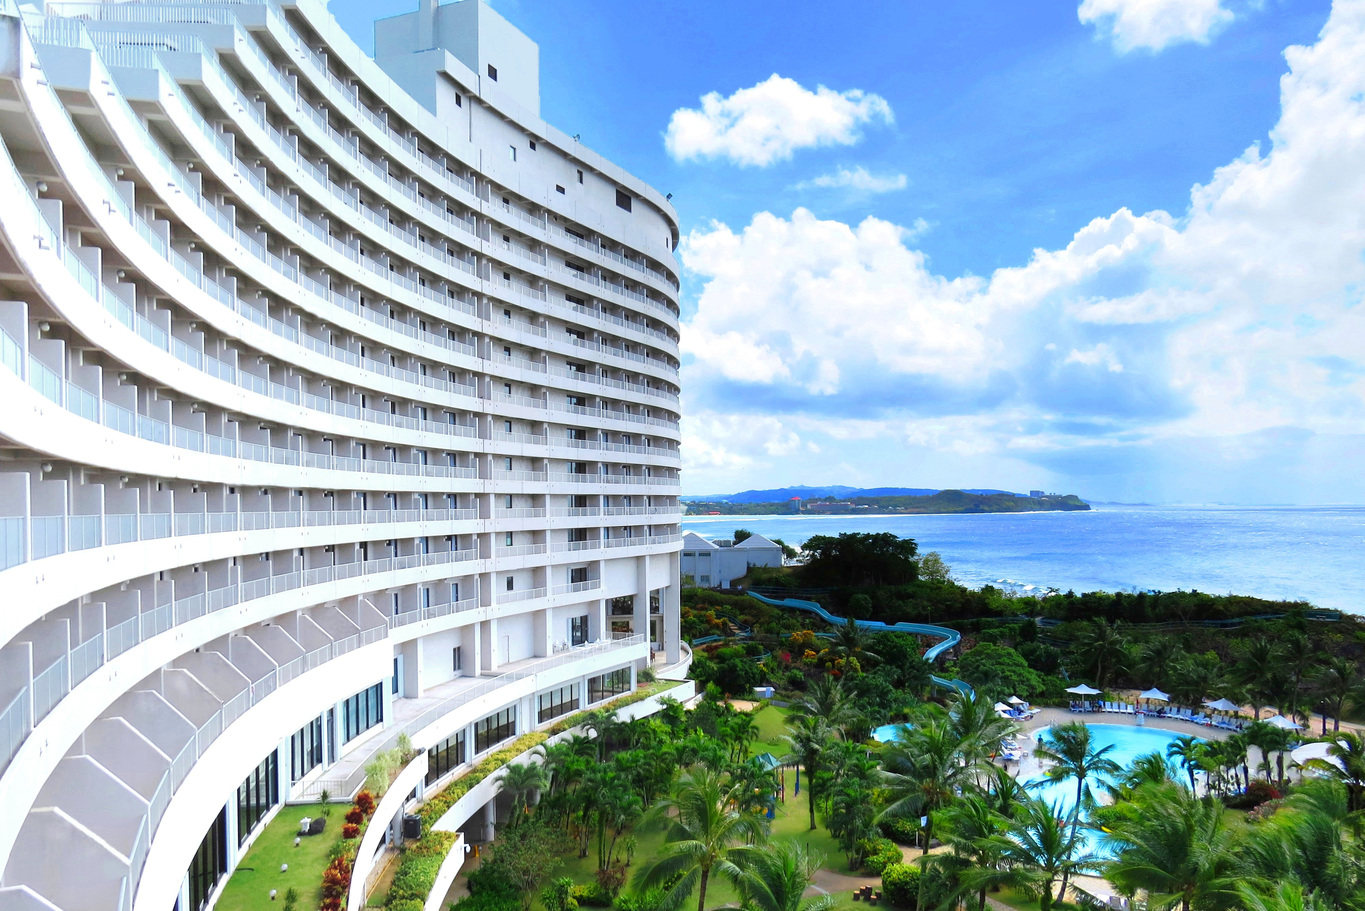 ホテル ニッコー グアム Hotel Nikko Guam 宿泊予約 楽天トラベル